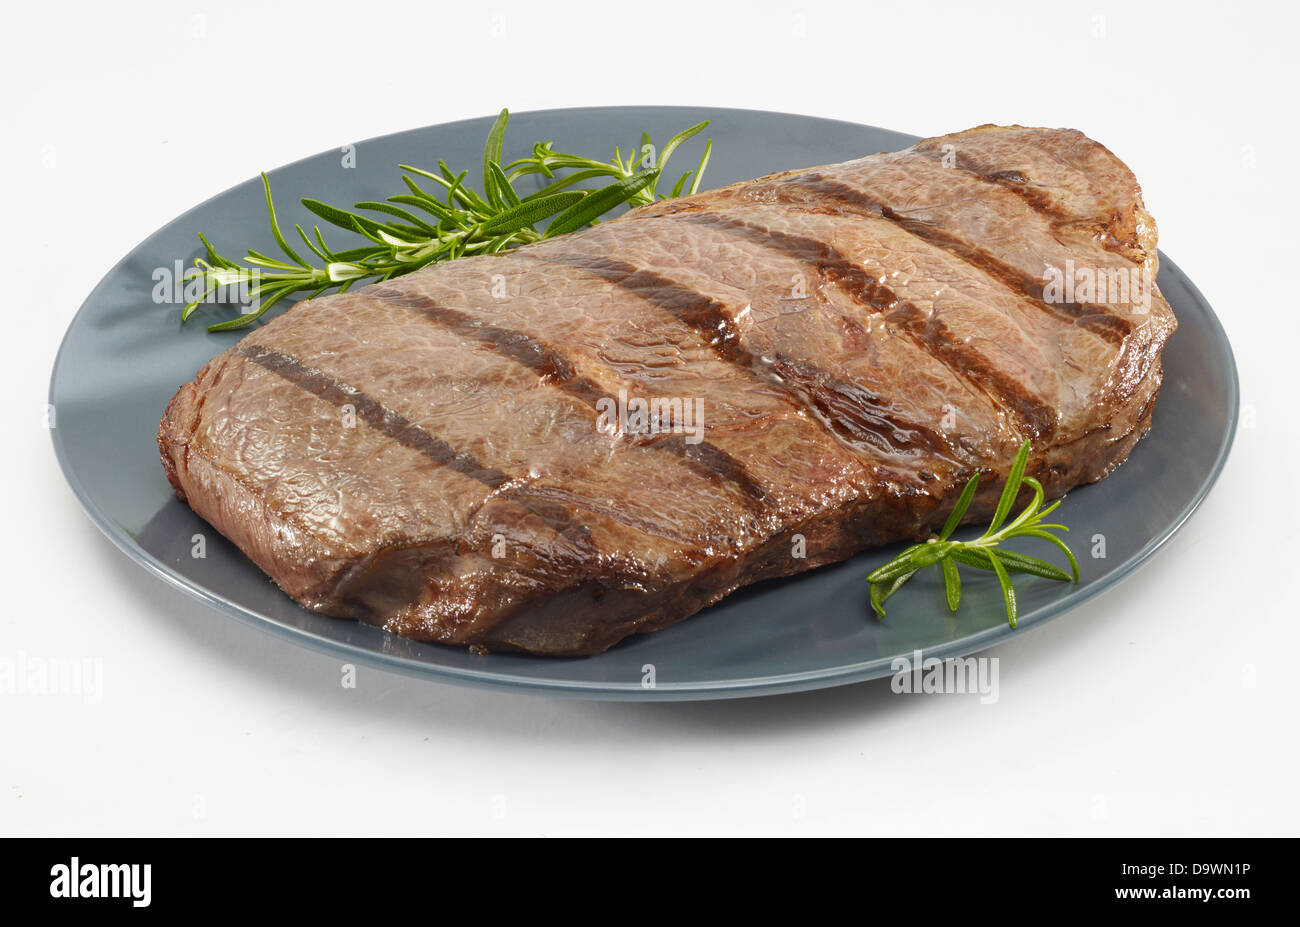 grilled sirloin steak Stock Photo